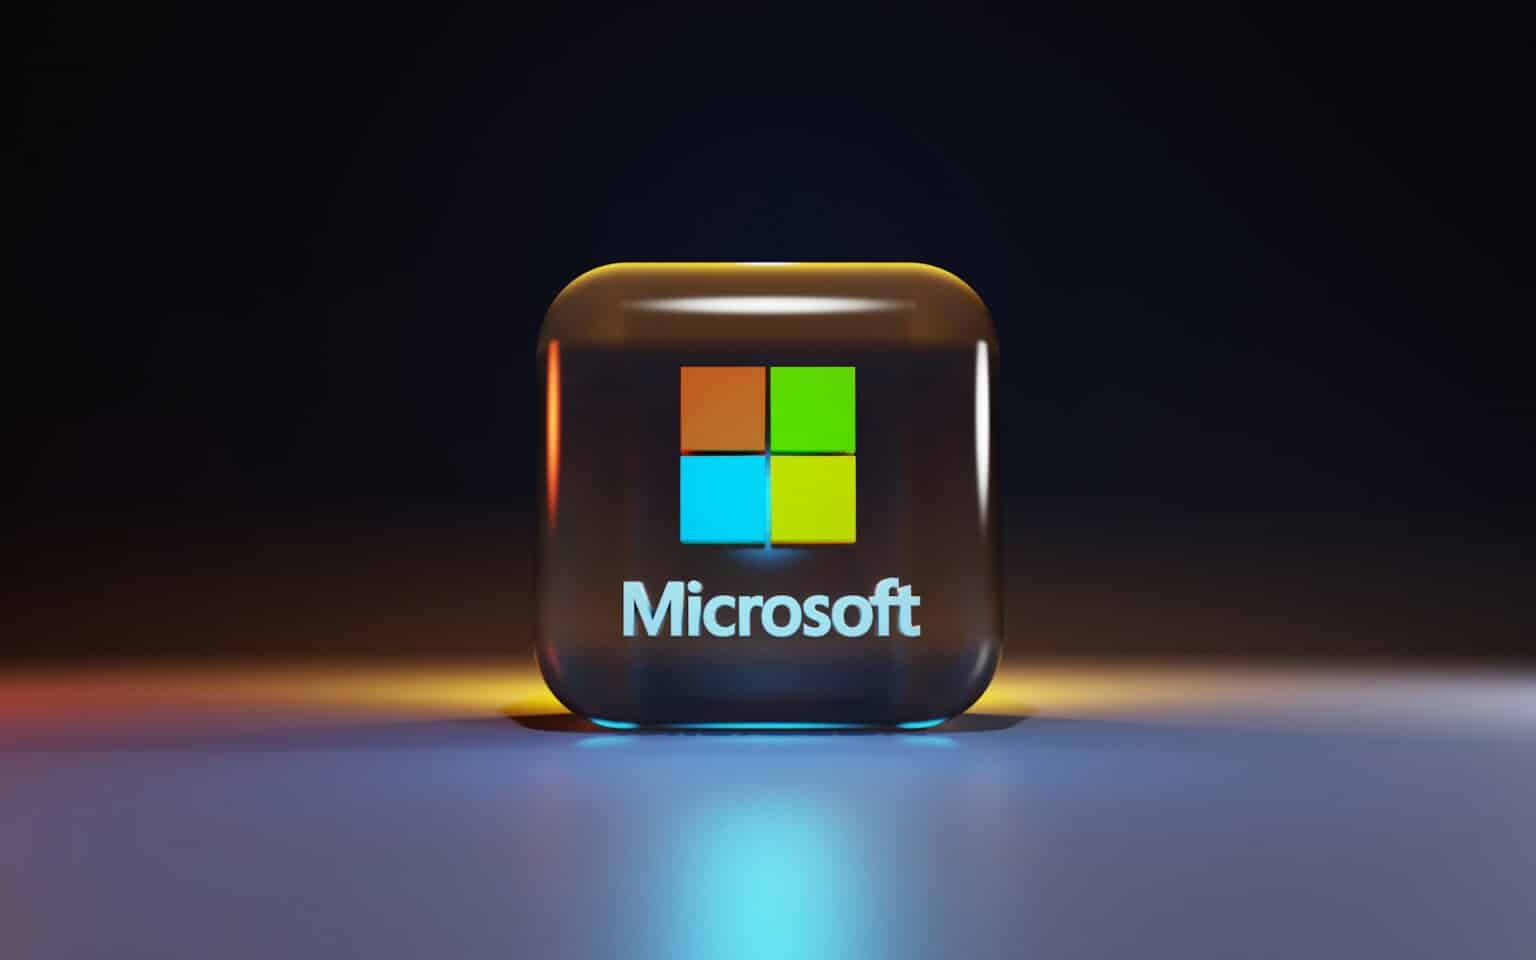 Cubo transparente com o logo da Microsoft